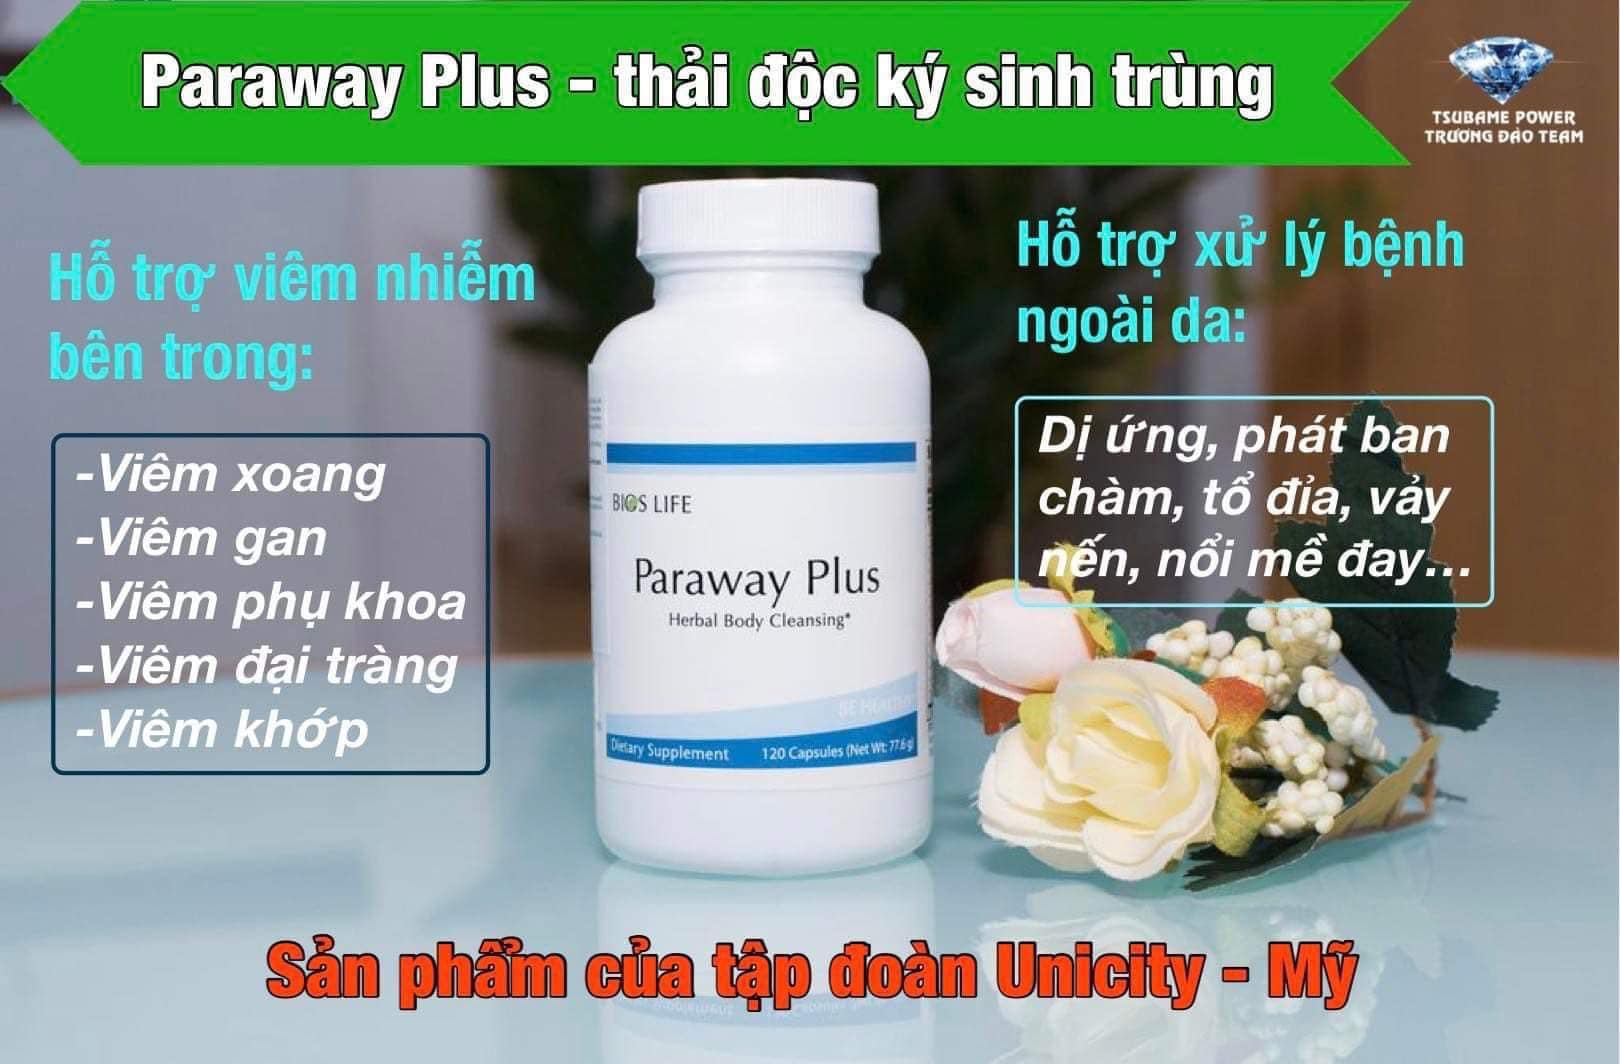 Paraway Plus Unicity 120 viên Thải độc ký sinh trùng, sạch đường ruột